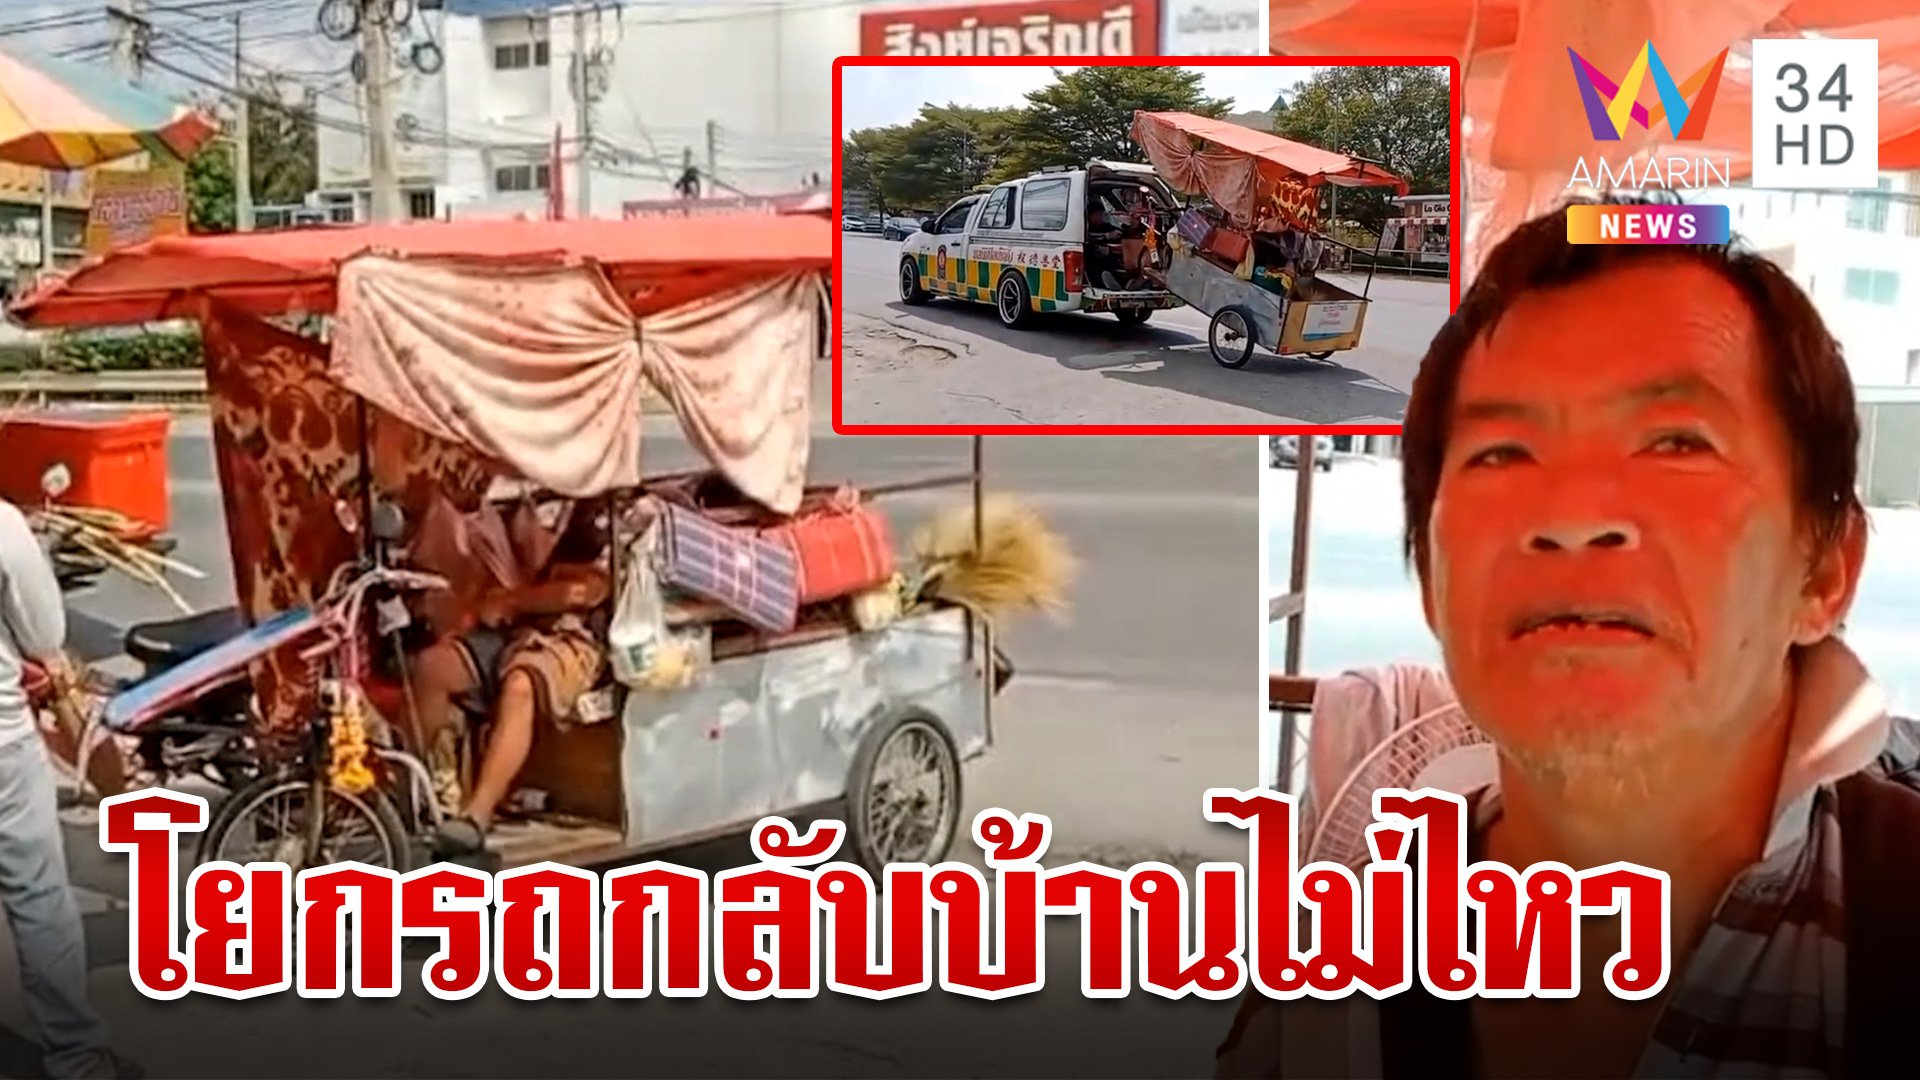 ลุงพิการห่วงแม่ป่วย สิงห์บุรี-น่าน ไกลเกินไป โยกรถกลับบ้านไม่ไหว | ทุบโต๊ะข่าว | 13 ม.ค. 67 | AMARIN TVHD34